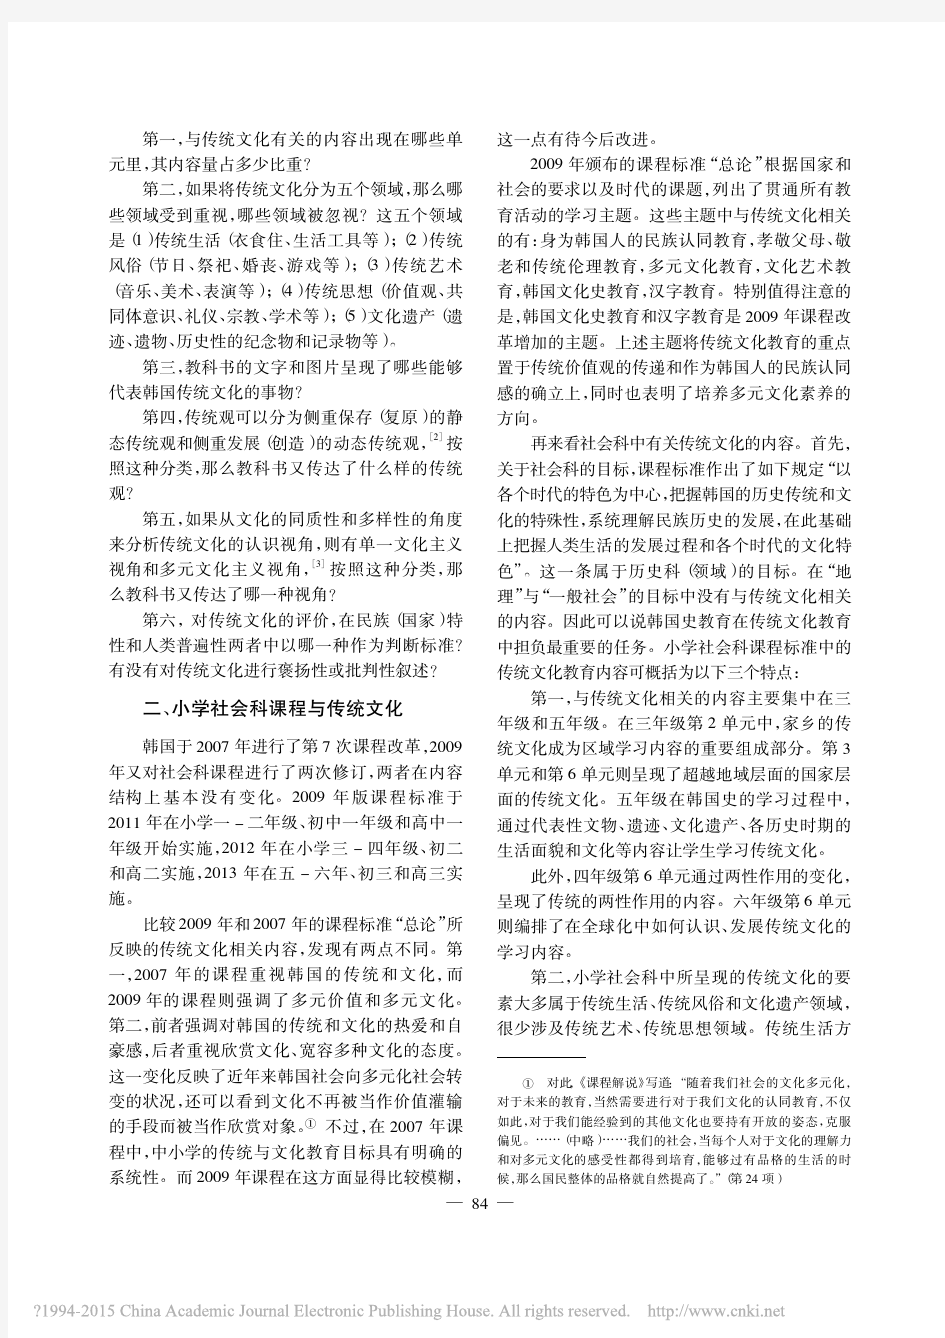 韩国小学社会科教科书中的“传统文化”